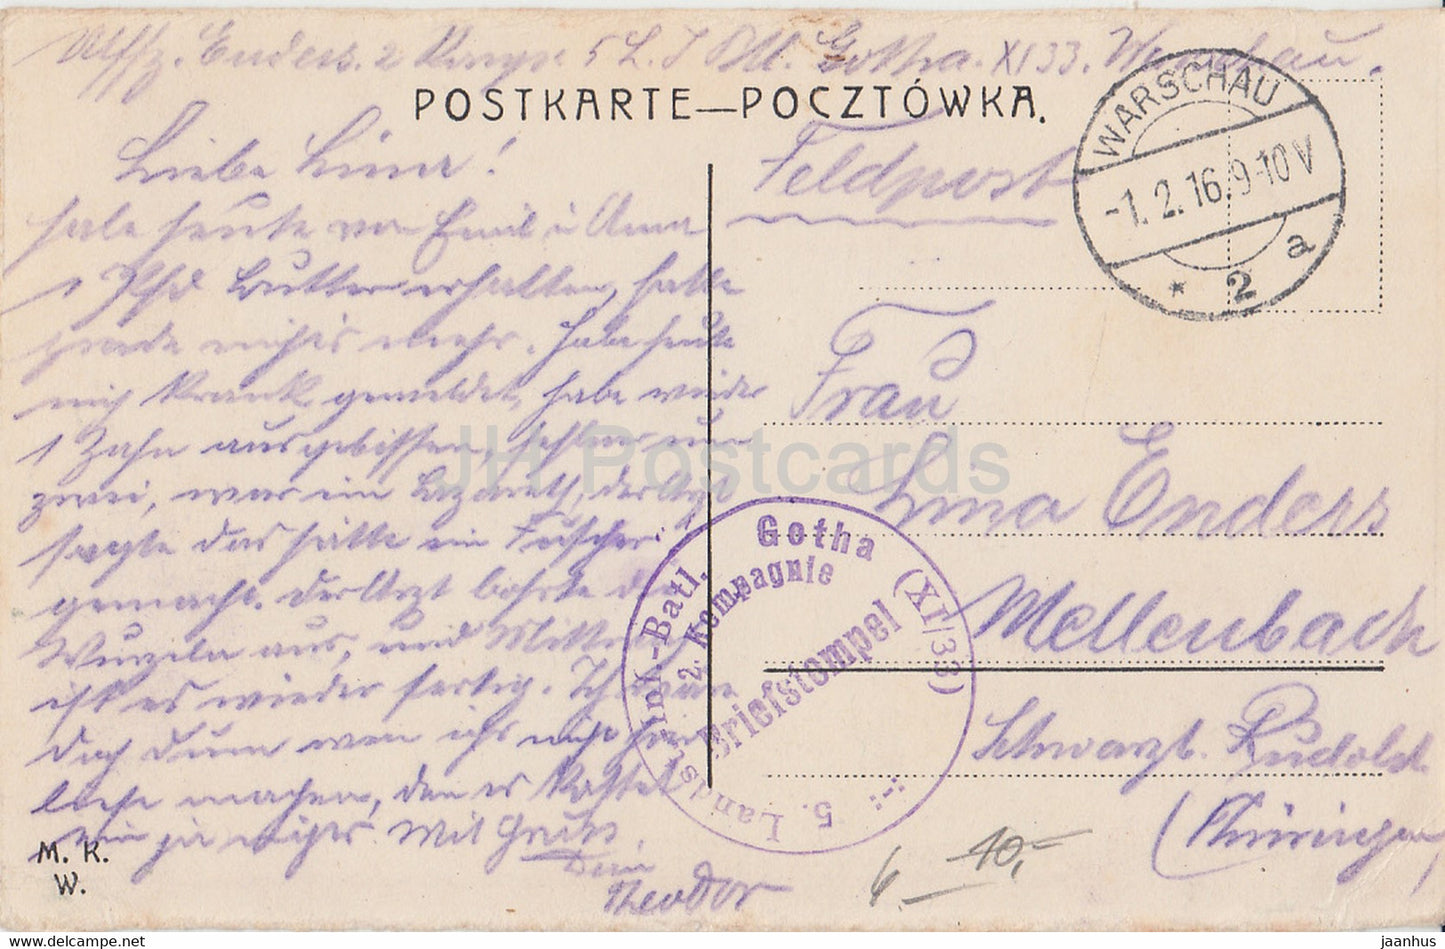 Warszawa - Warschau - Reichsbank - Bank Panstwa - Landstl Inf Batl Gotha  Feldpost - old postcard - 1916 - Poland - used